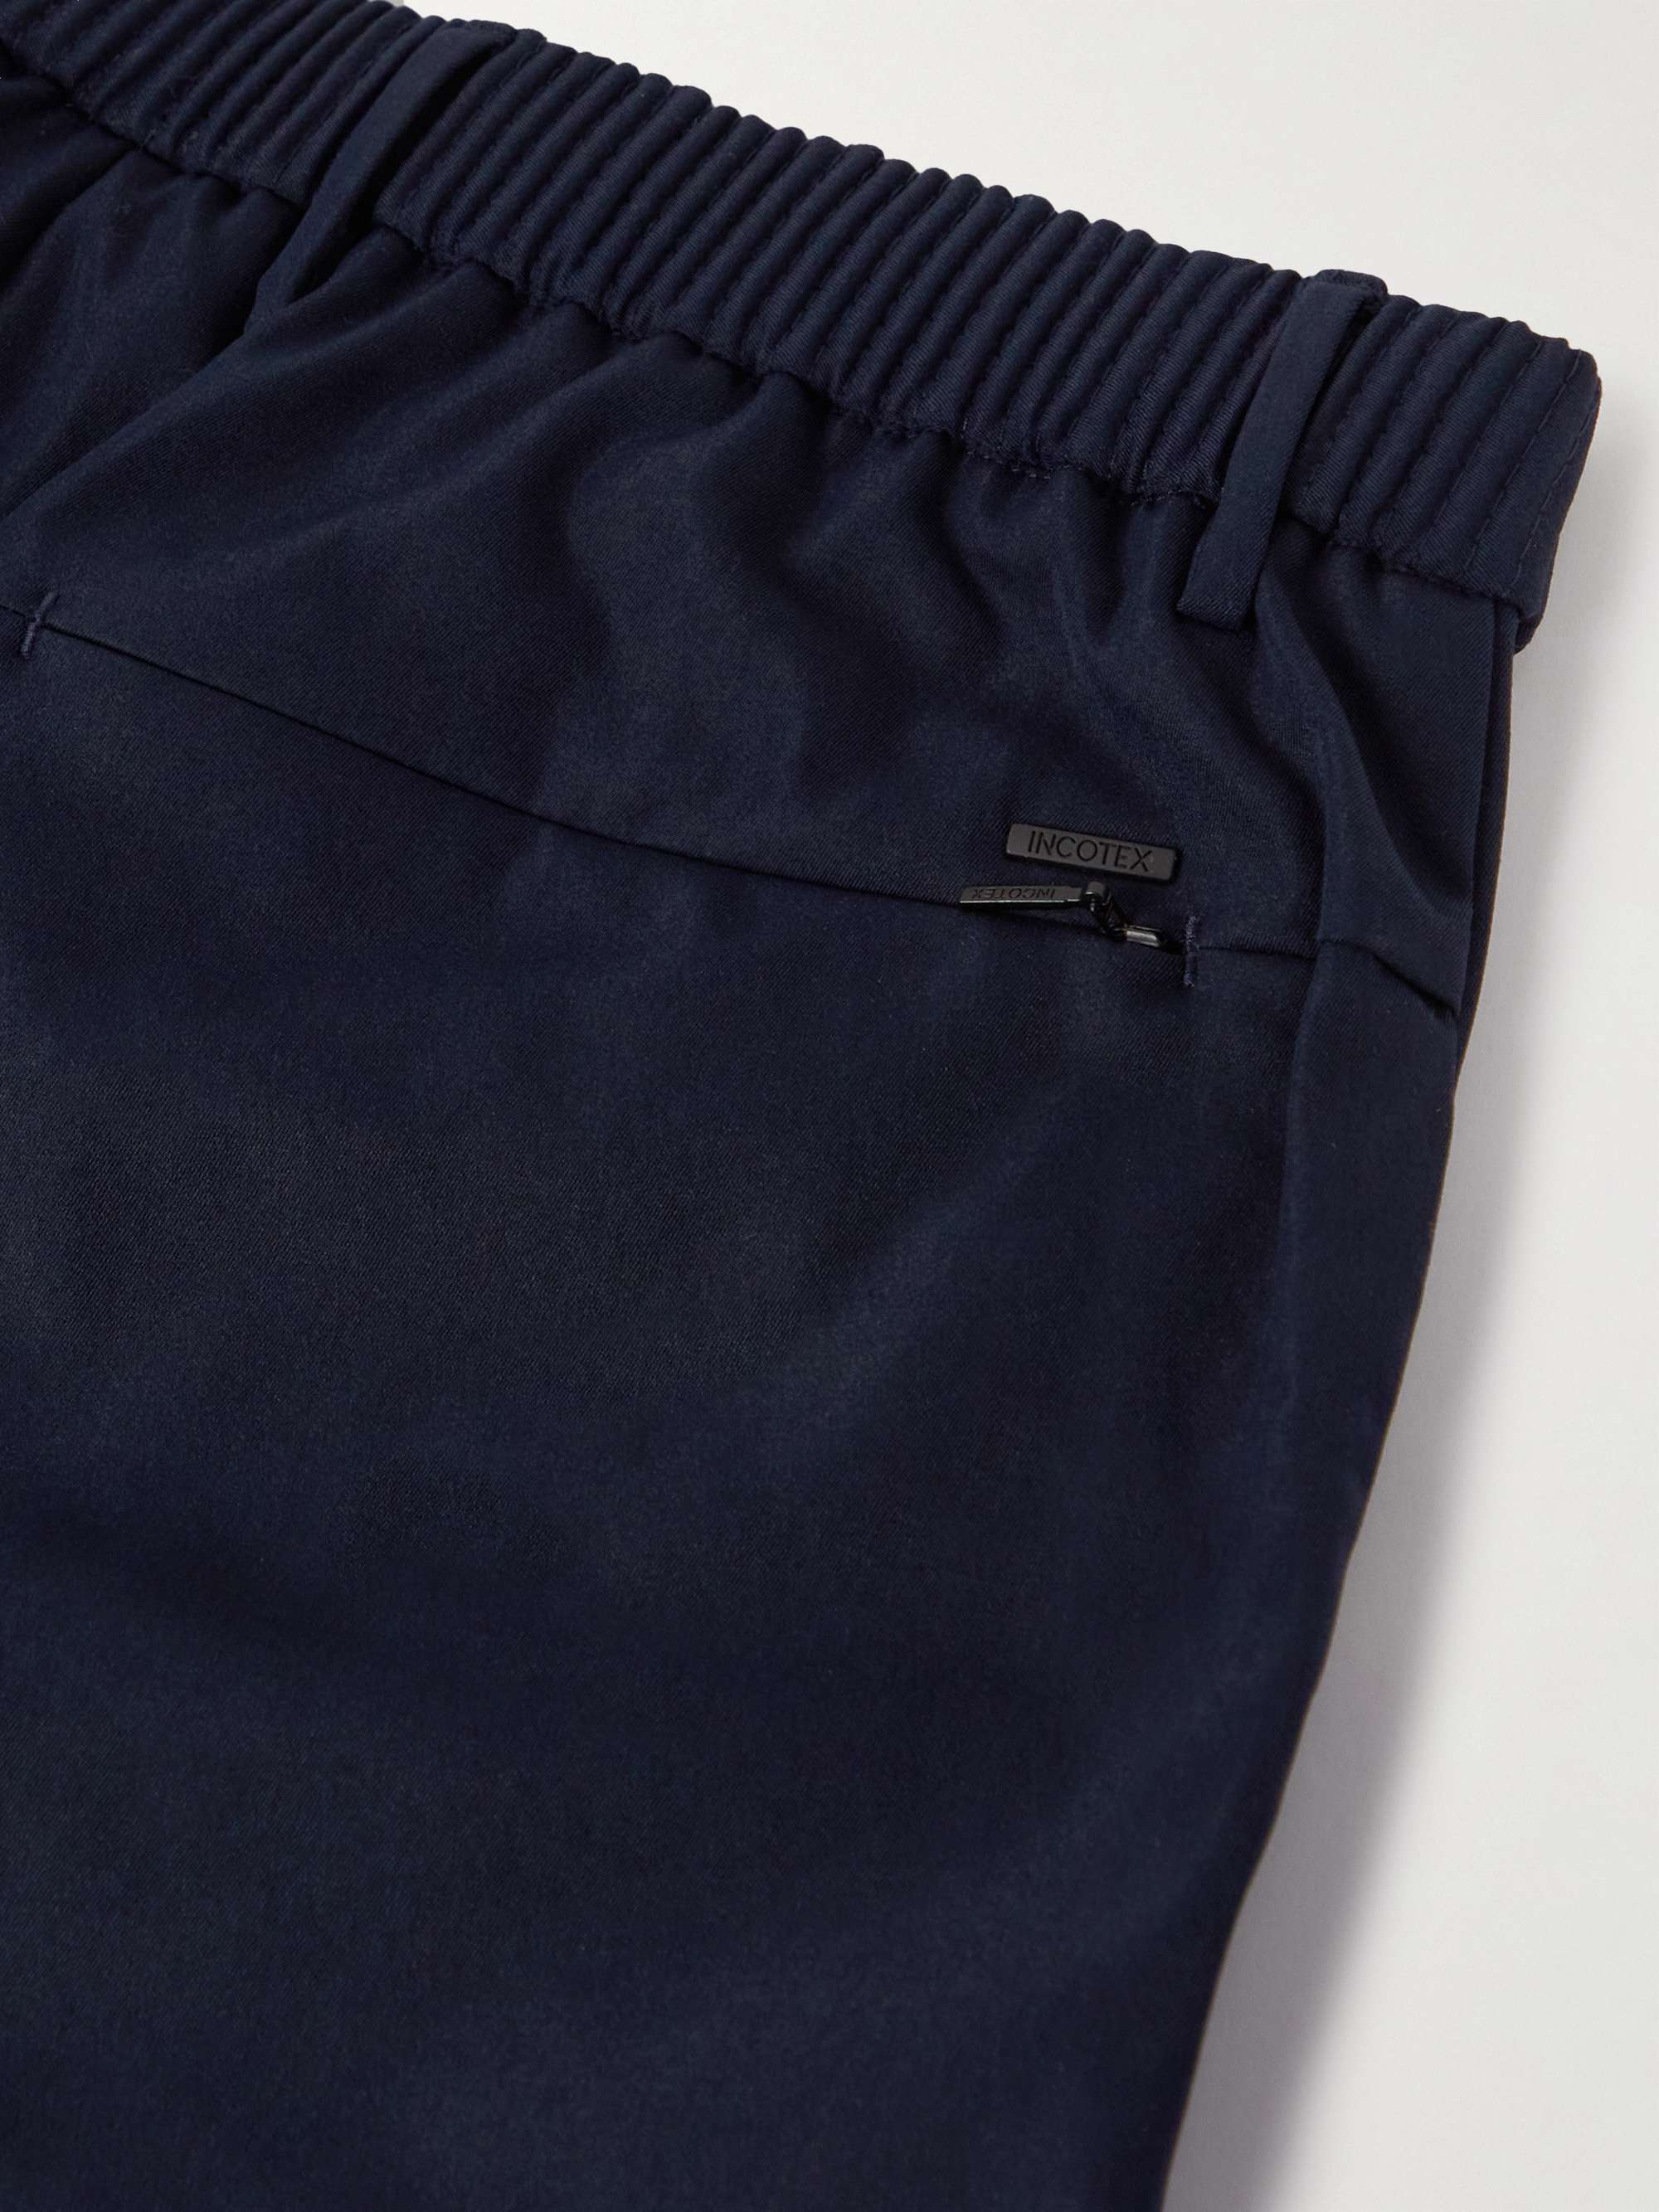 INCOTEX Slowear Teknosartorial Slim-Fit Tapered Pleated Twill Trousers